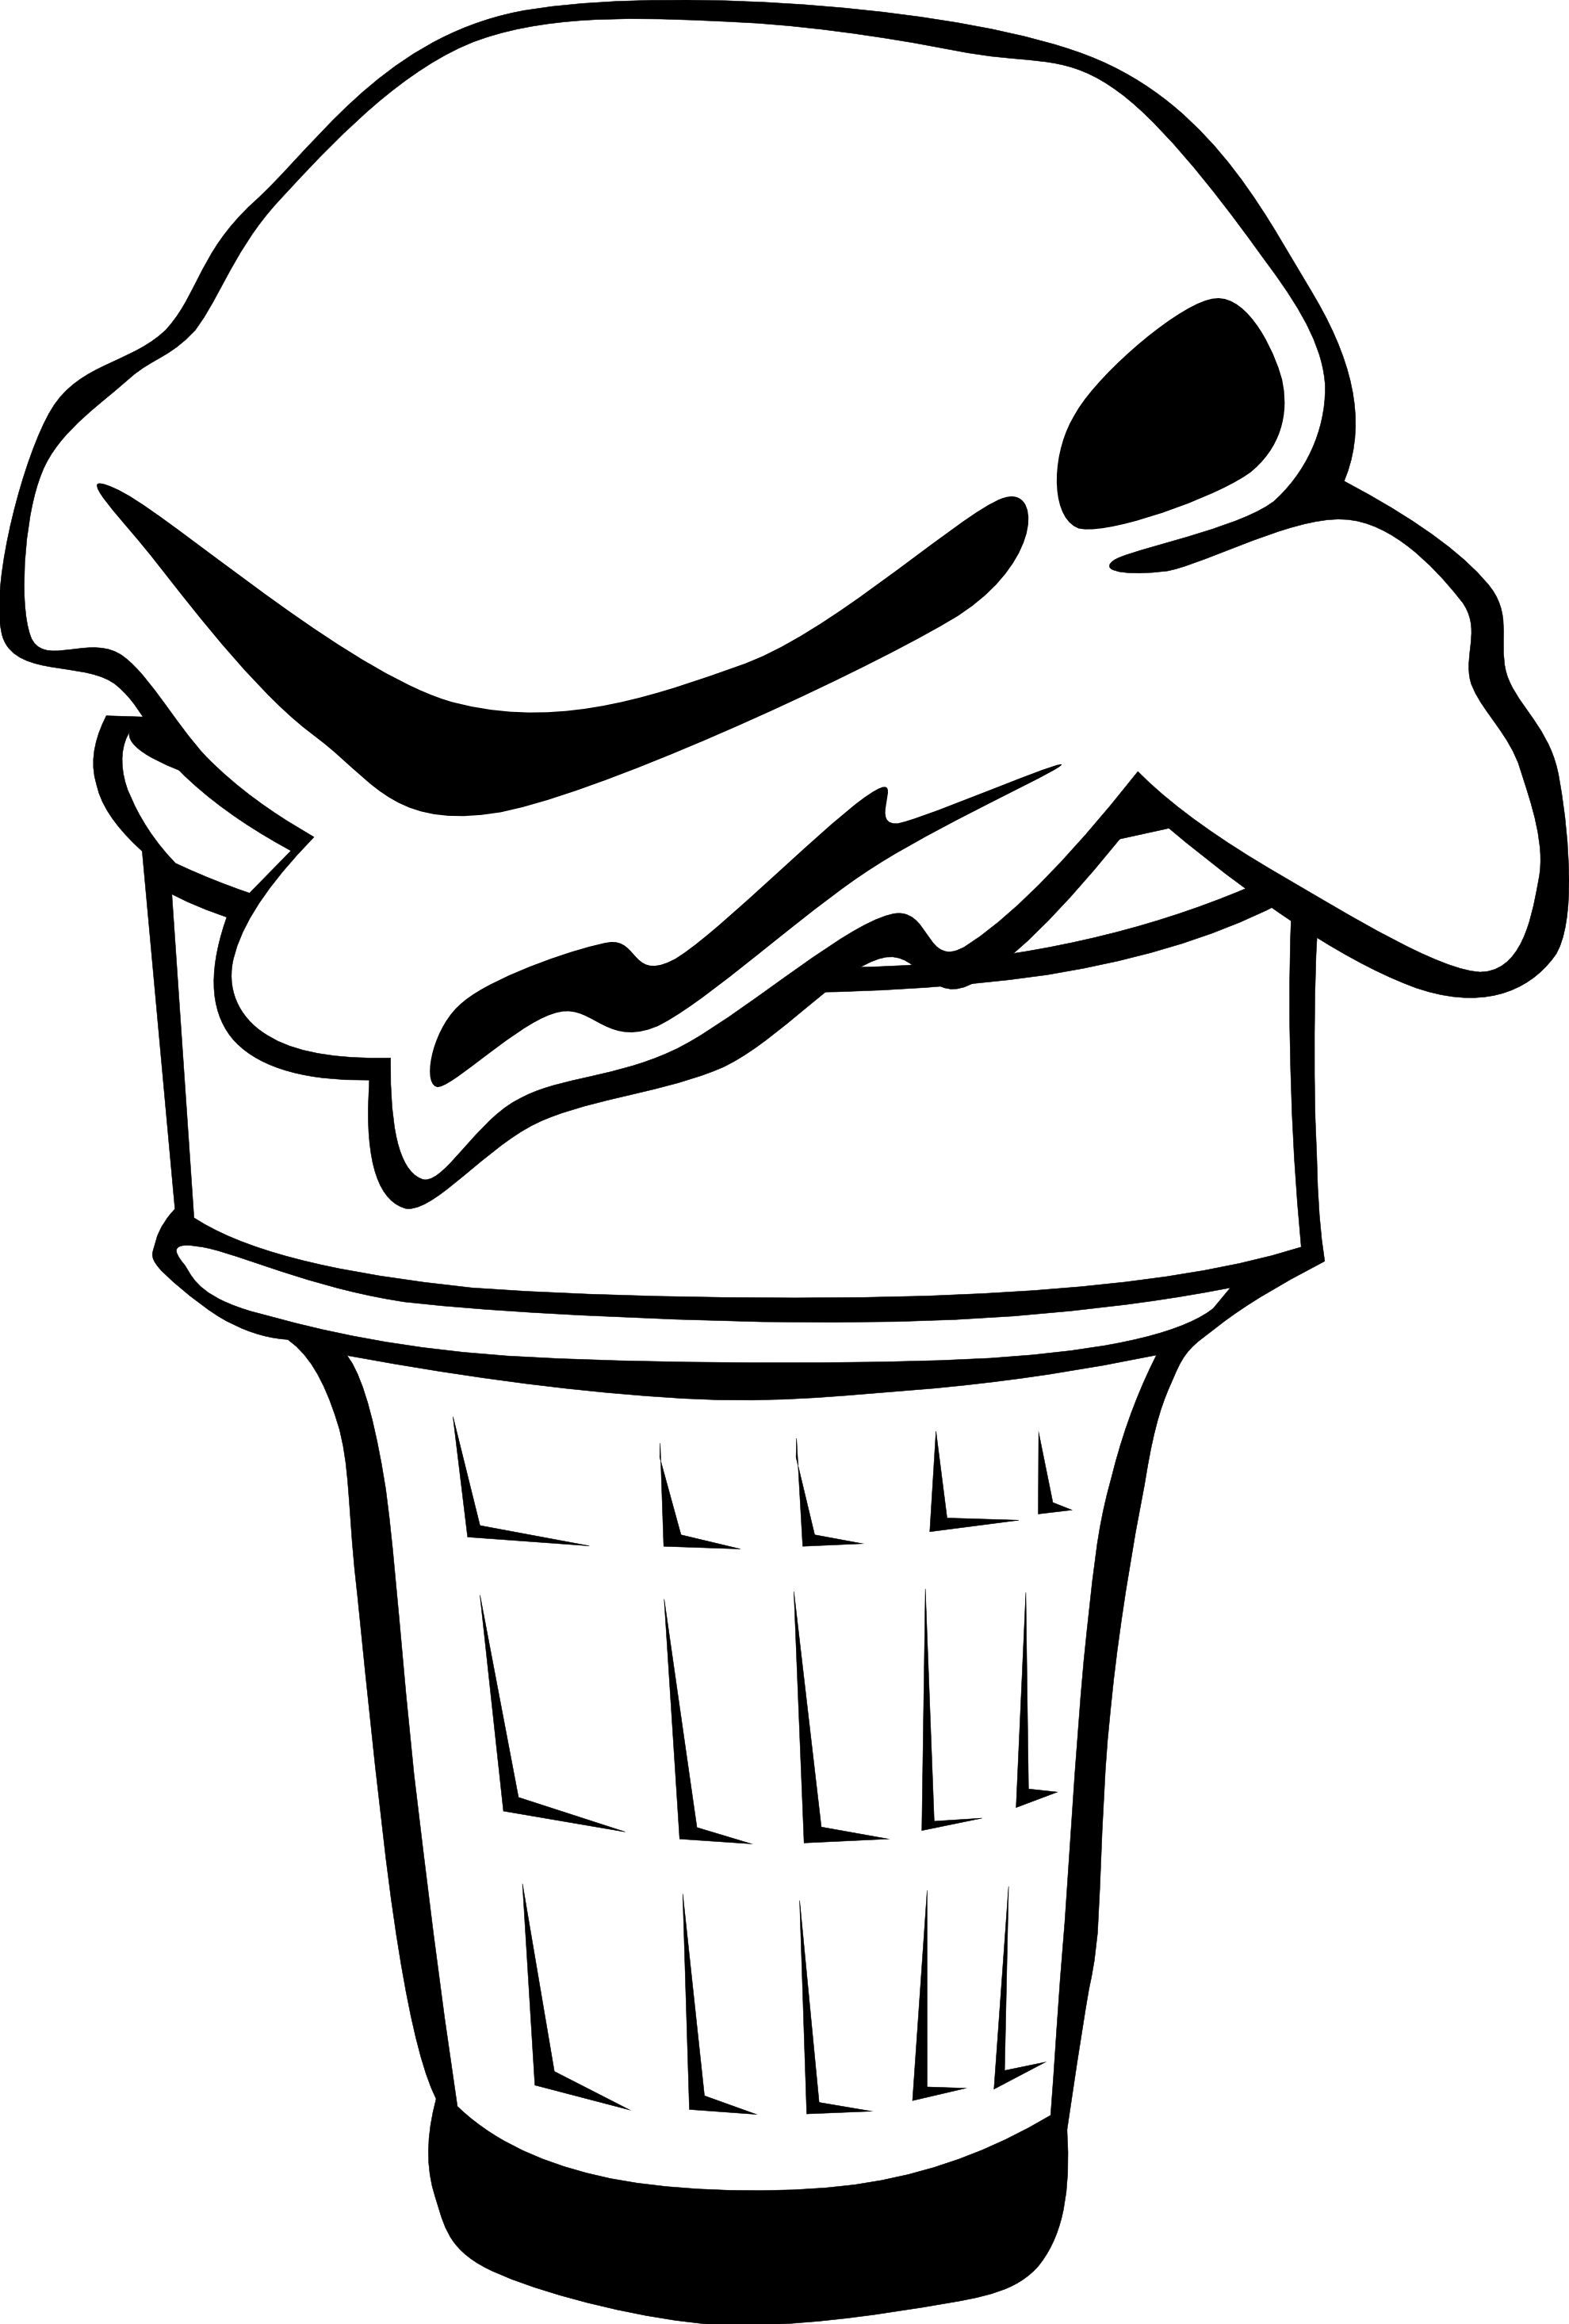 Ice cream cone clip art black and white